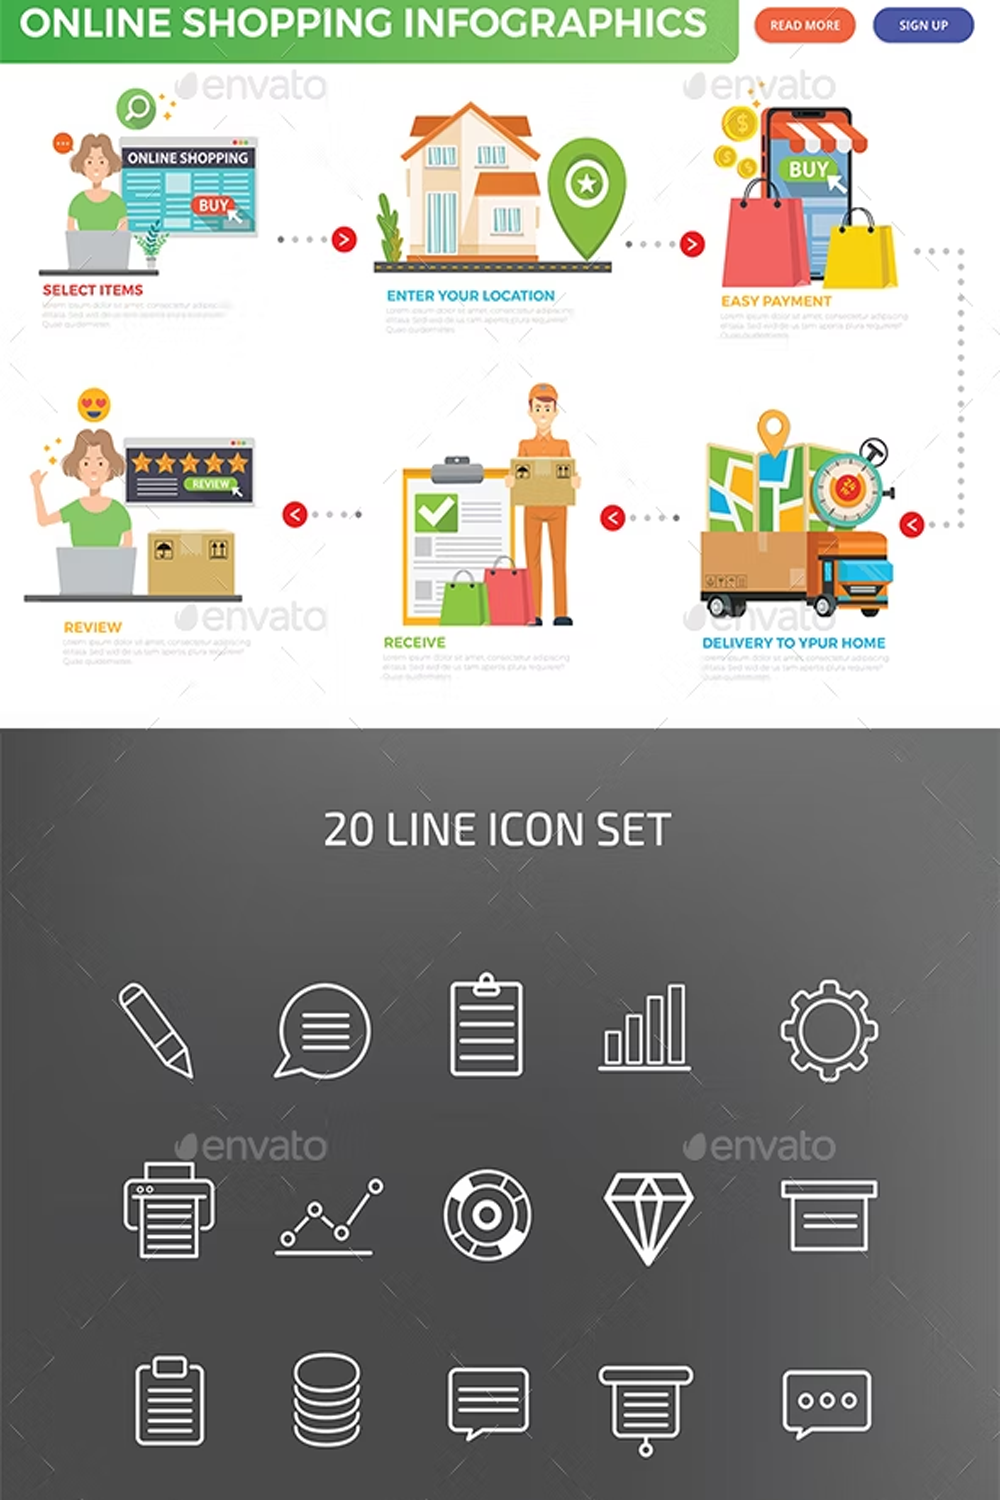 Illustrations online shopping infographics of pinterest.